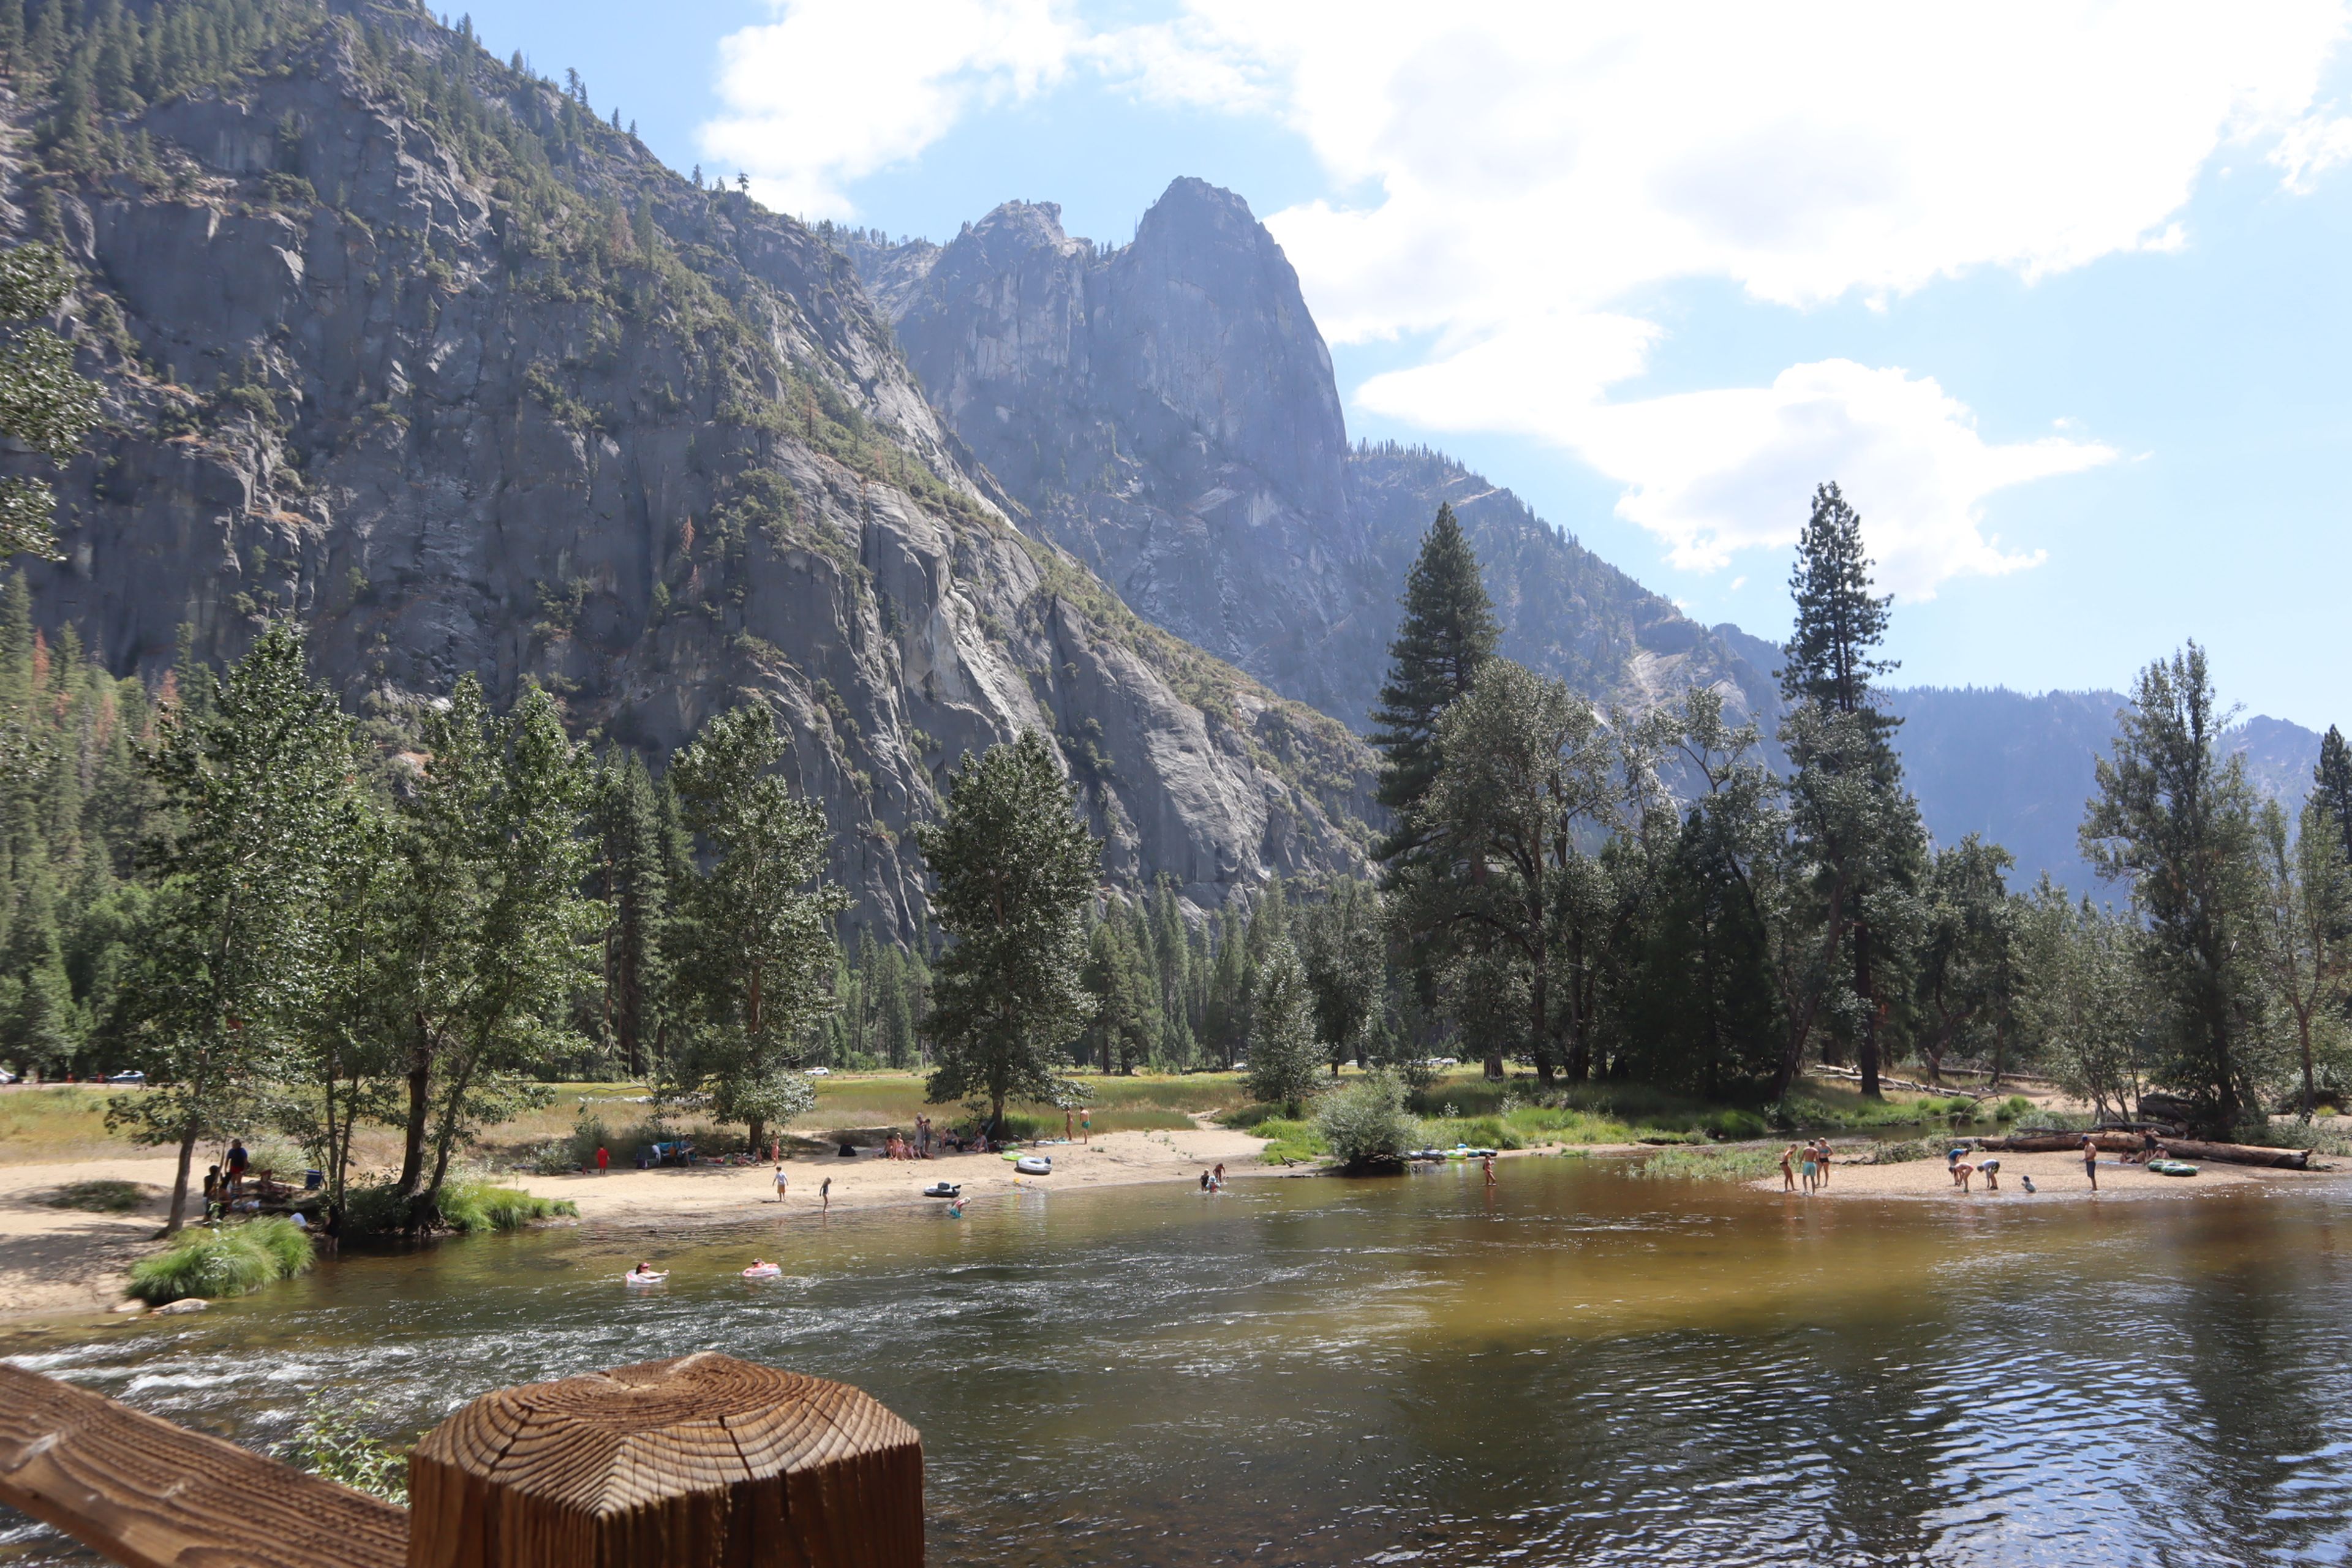 Zona de playa del río que atraviesa el valle de Yosemite.